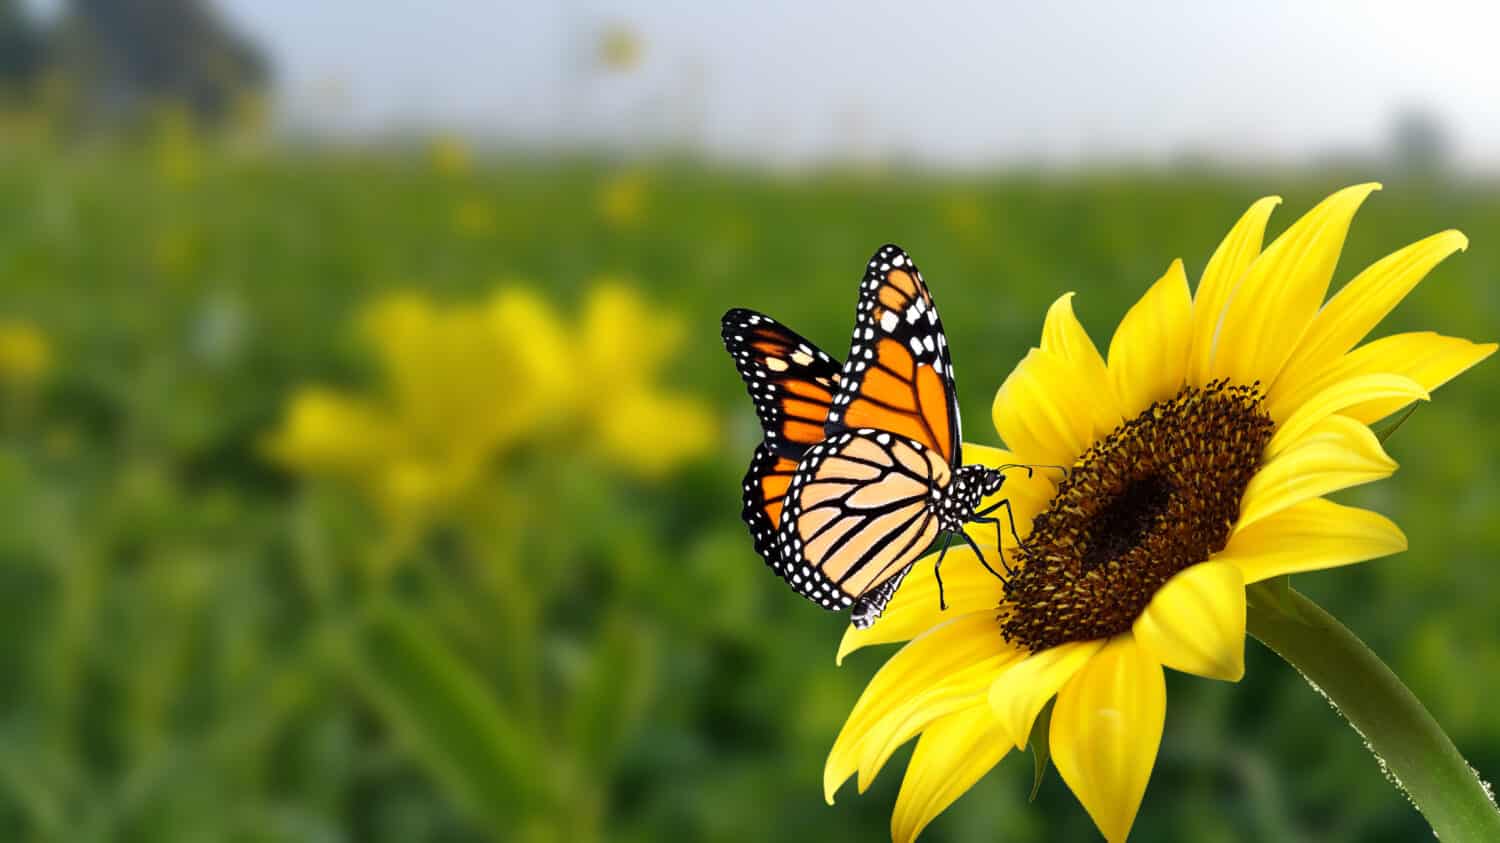 farfalla monarca sul fiore.  Immagine di una farfalla monarca sul girasole con sfondo sfocato.  Natura stock immagine di un insetto primo piano.  La più bella immagine di una farfalla con le ali sui fiori.